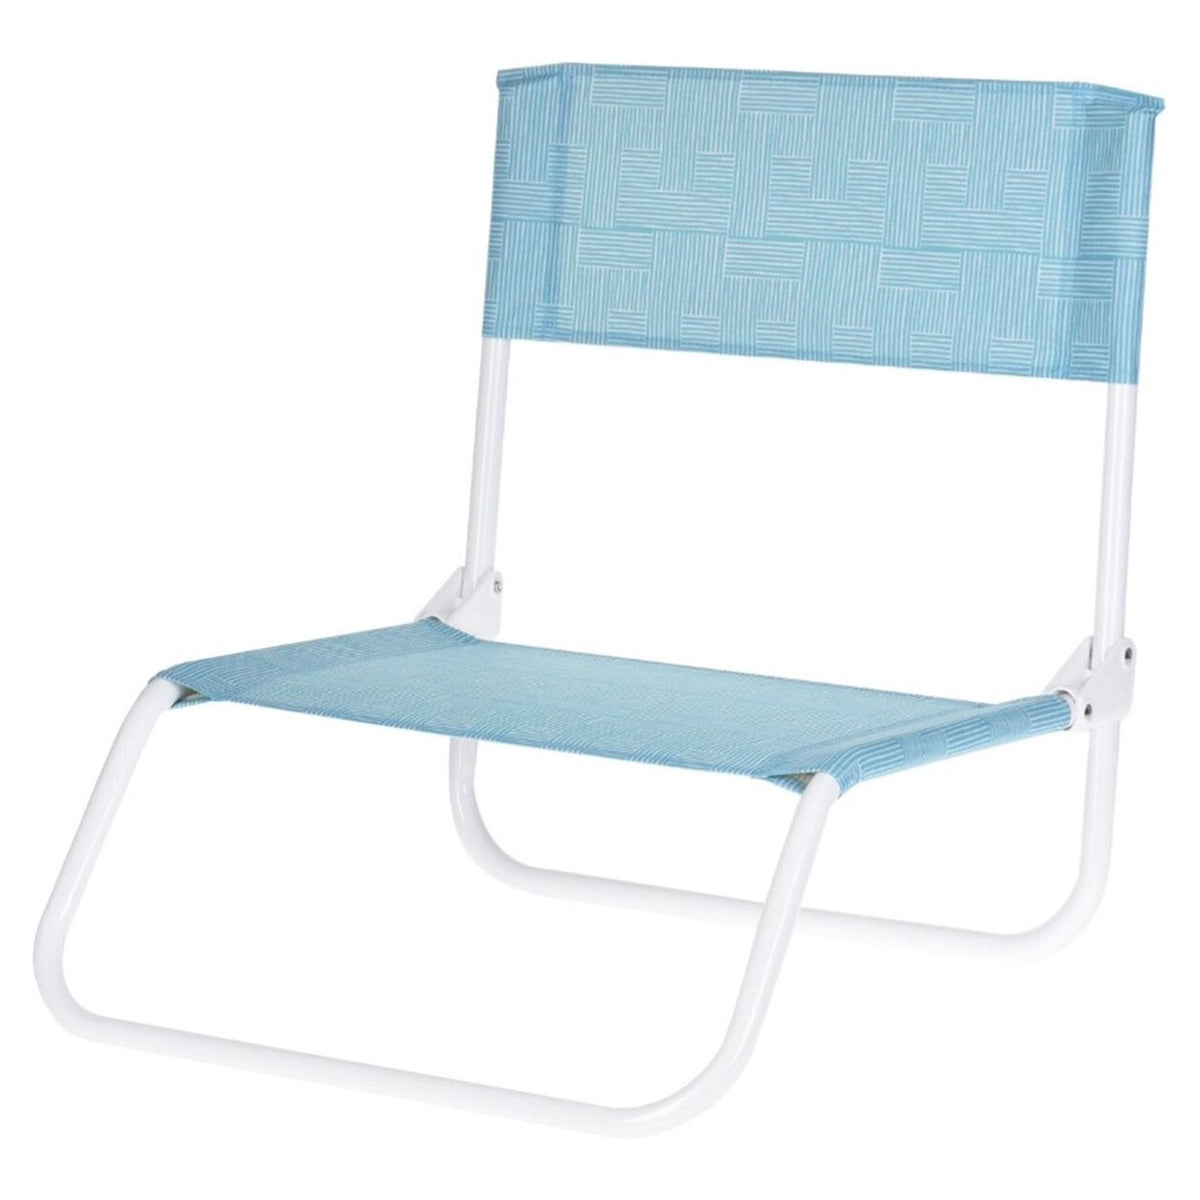 كرسي شاطئ أرضي قابل للطي ،لون  أخضر فاتح الحجم: 50x45x50سم